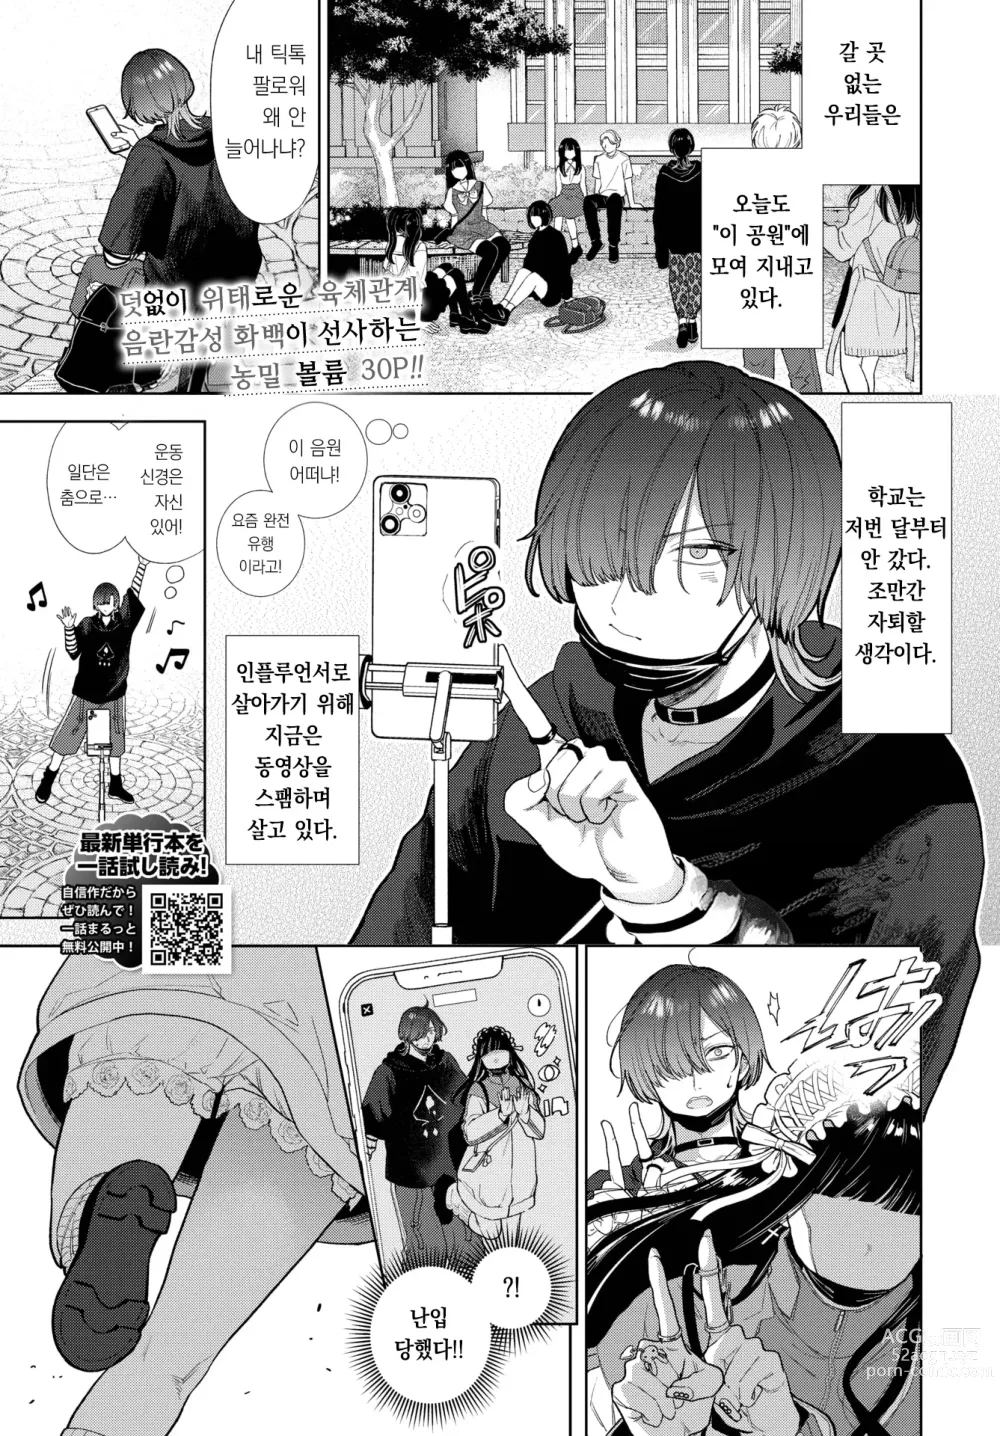 Page 2 of manga 사랑하는 라라치